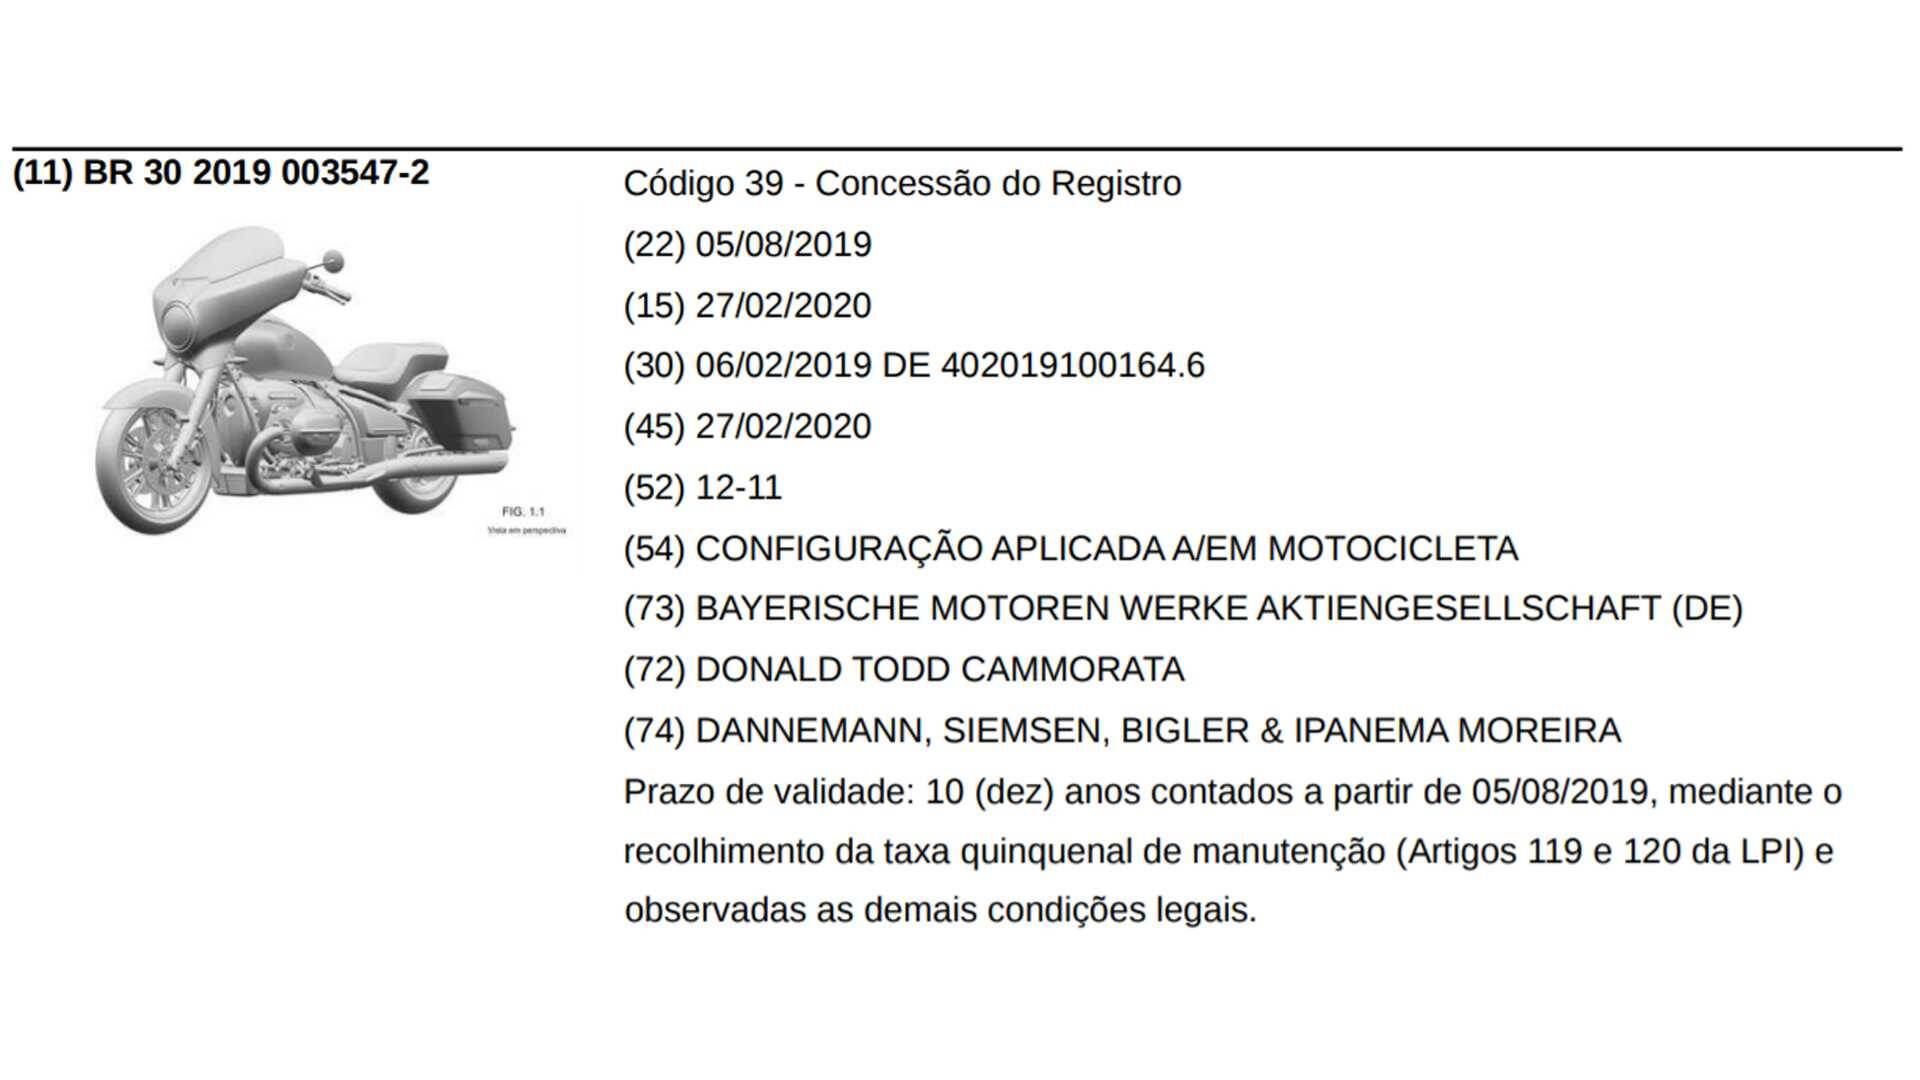 BMW bagger e custom, patentes. Foto: Divulgação